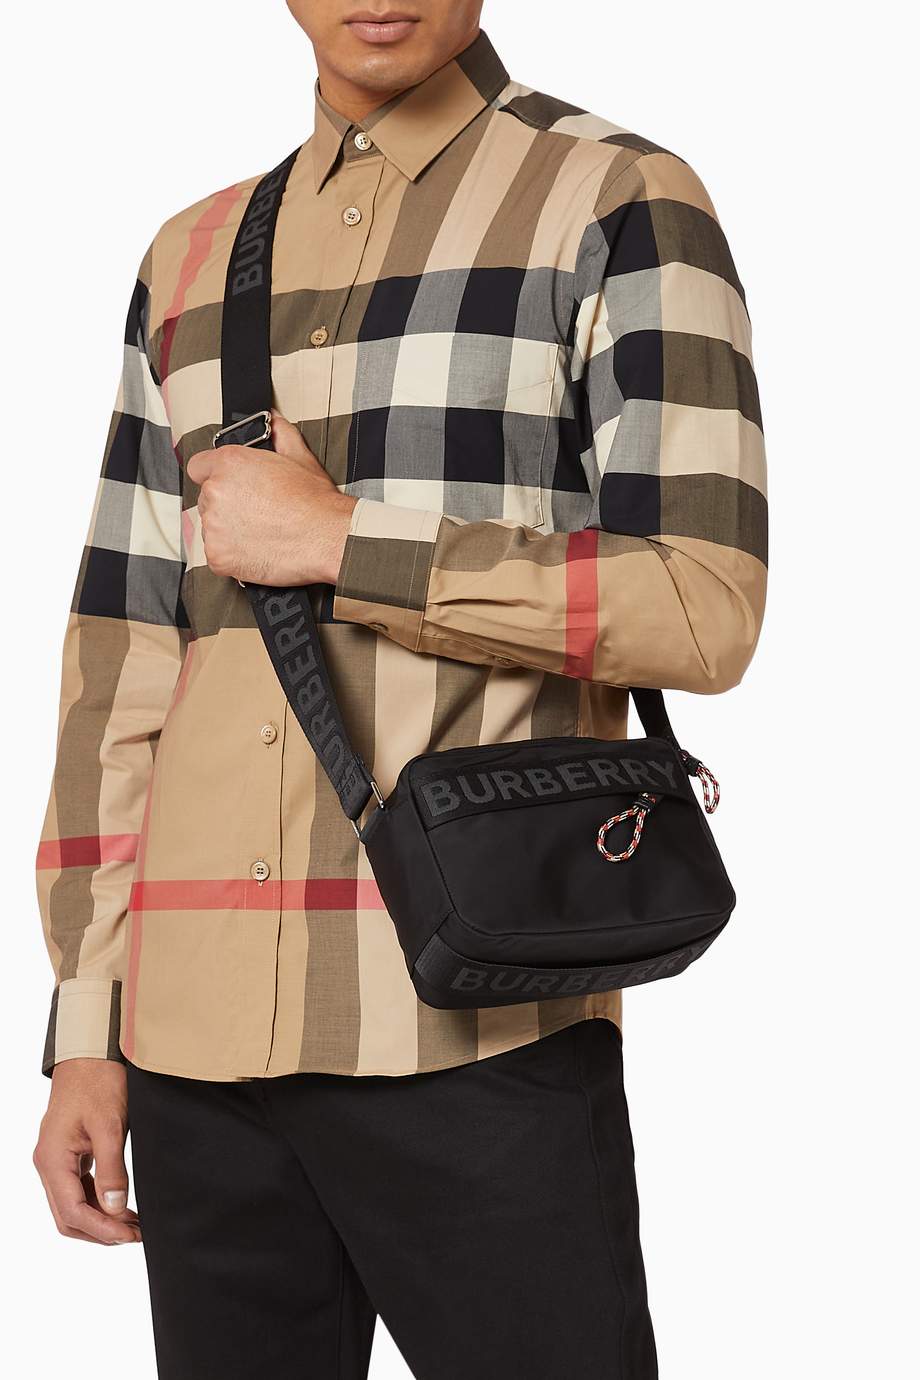 Burberry Men's Handbags & Purses For Men | semashow.com